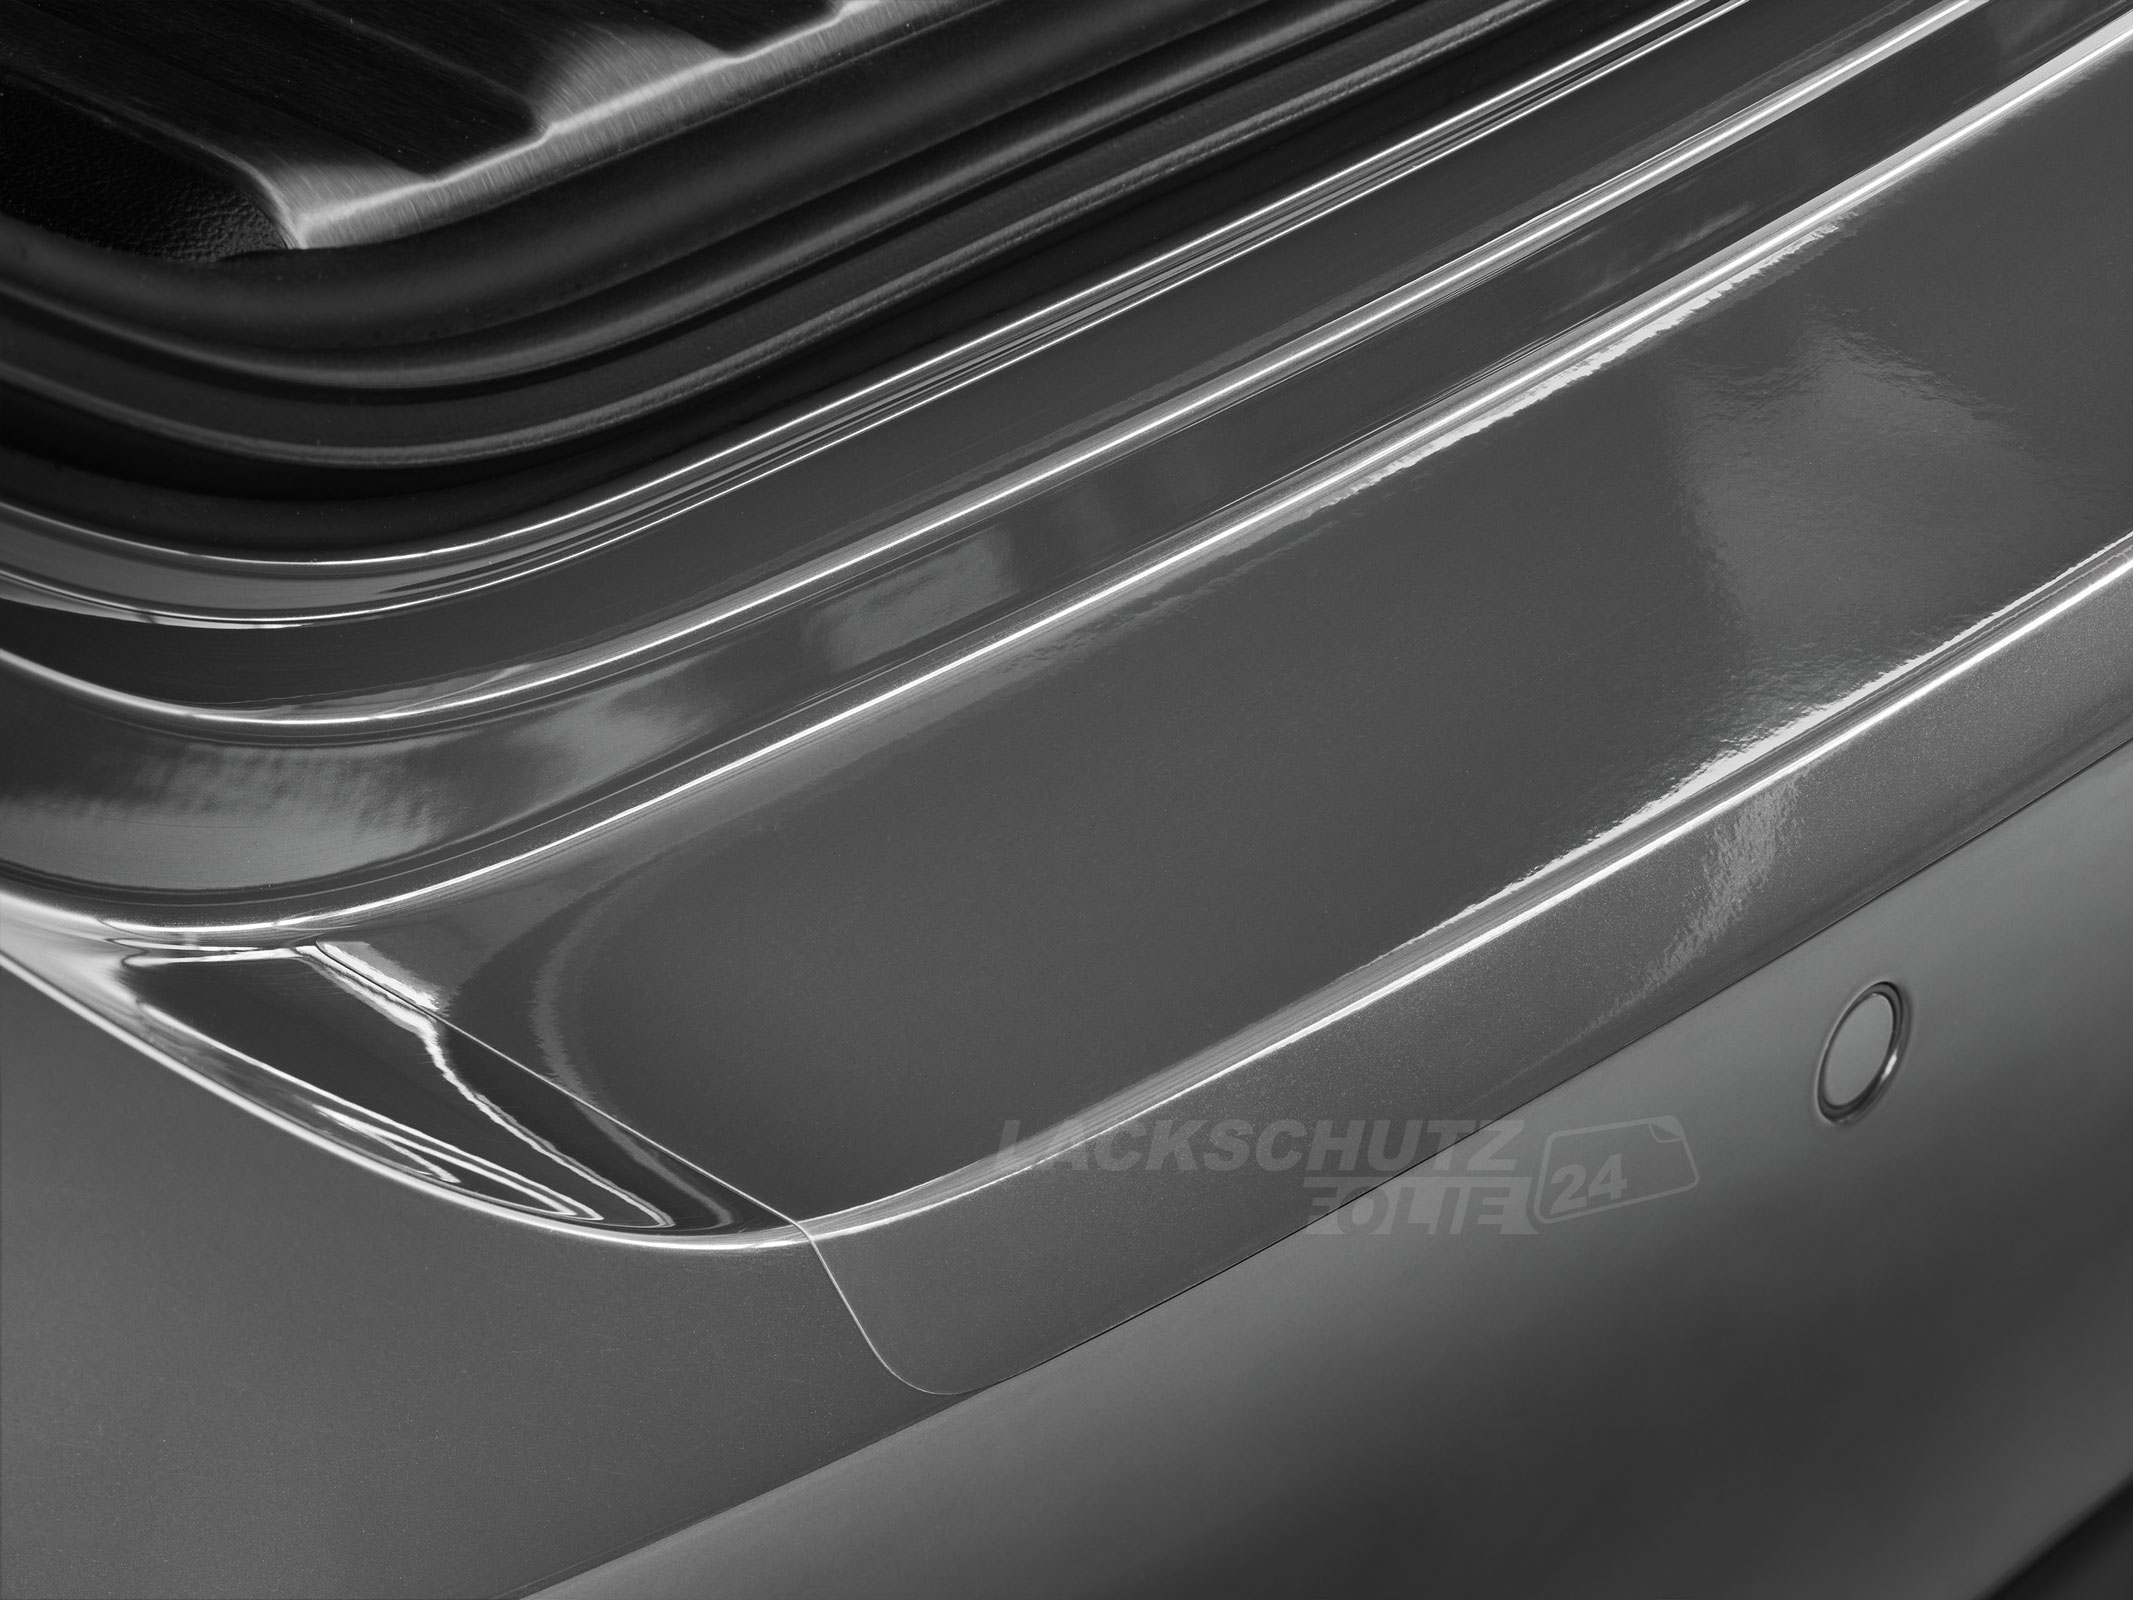 Ladekantenschutzfolie - Transparent Glatt Hochglänzend 240 µm stark für Audi A4 Avant (Kombi) B6, Typ 8E, BJ 2001-2004